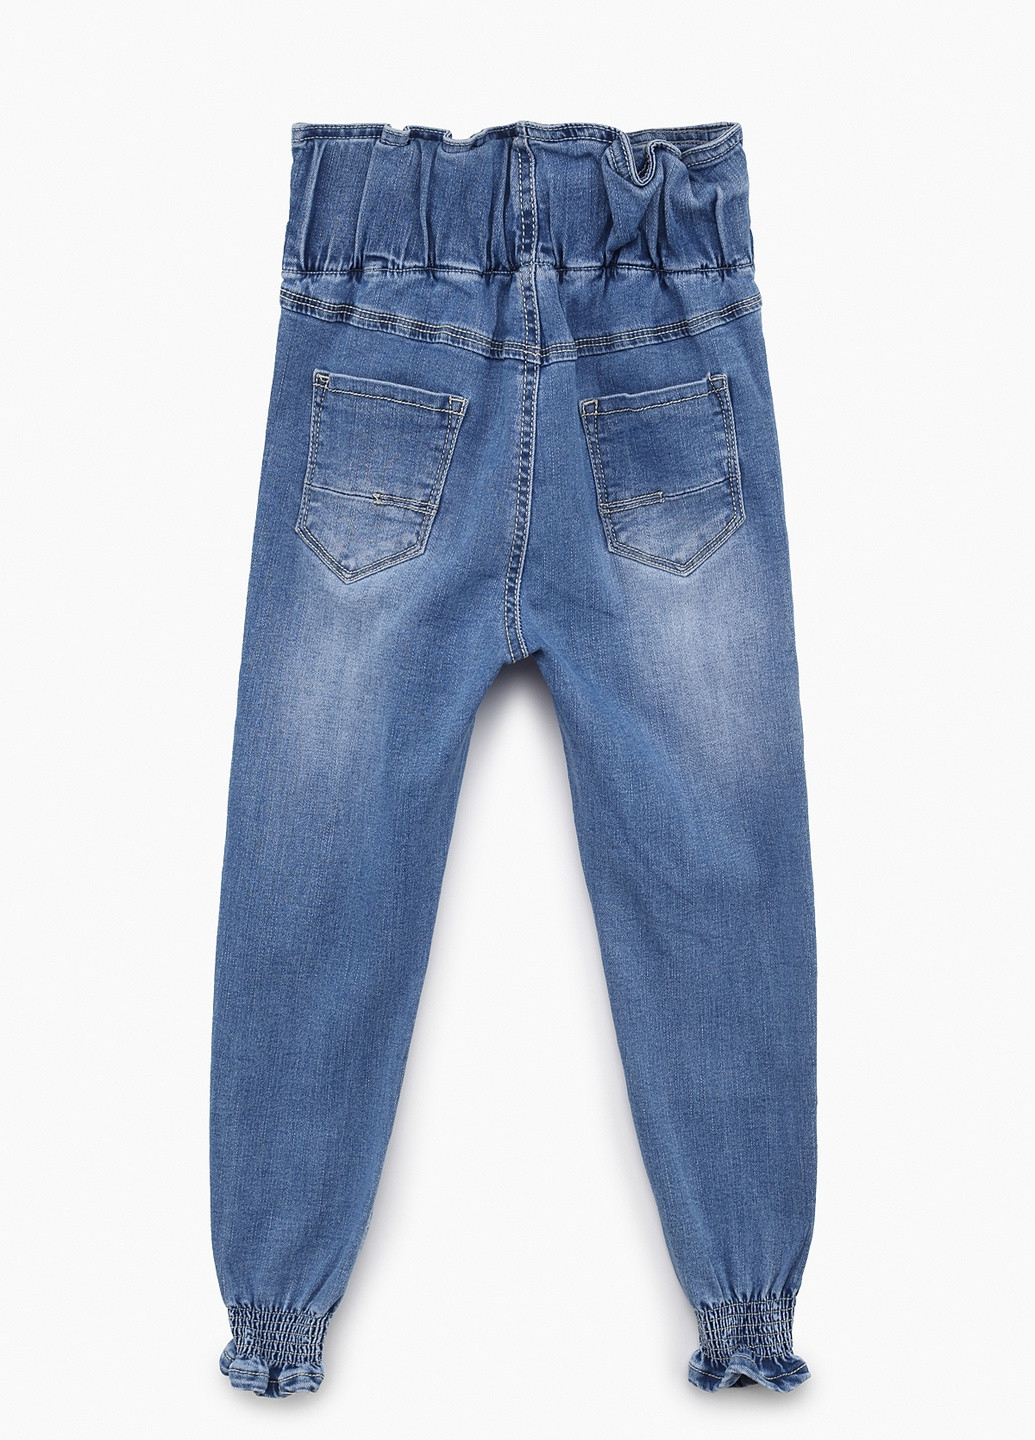 Голубые летние джинсы S&D